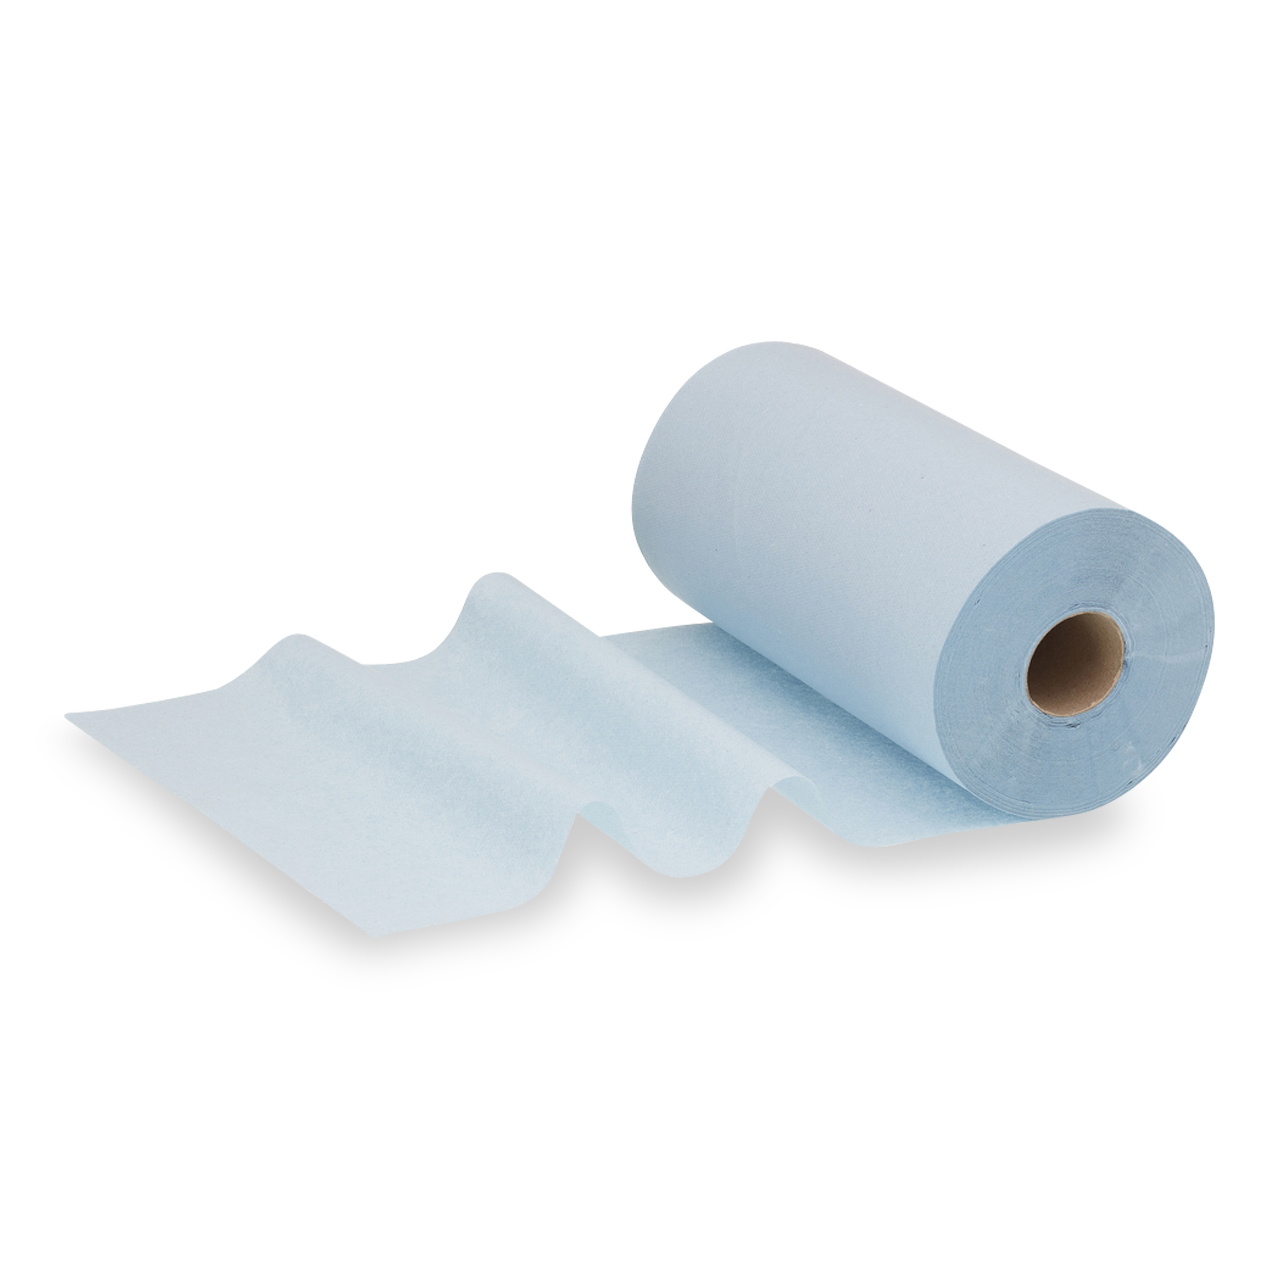 WypAll® L10 Papierwischtuch für Lebensmittel & Hygiene - Kleinrolle / Blau /1-lagig